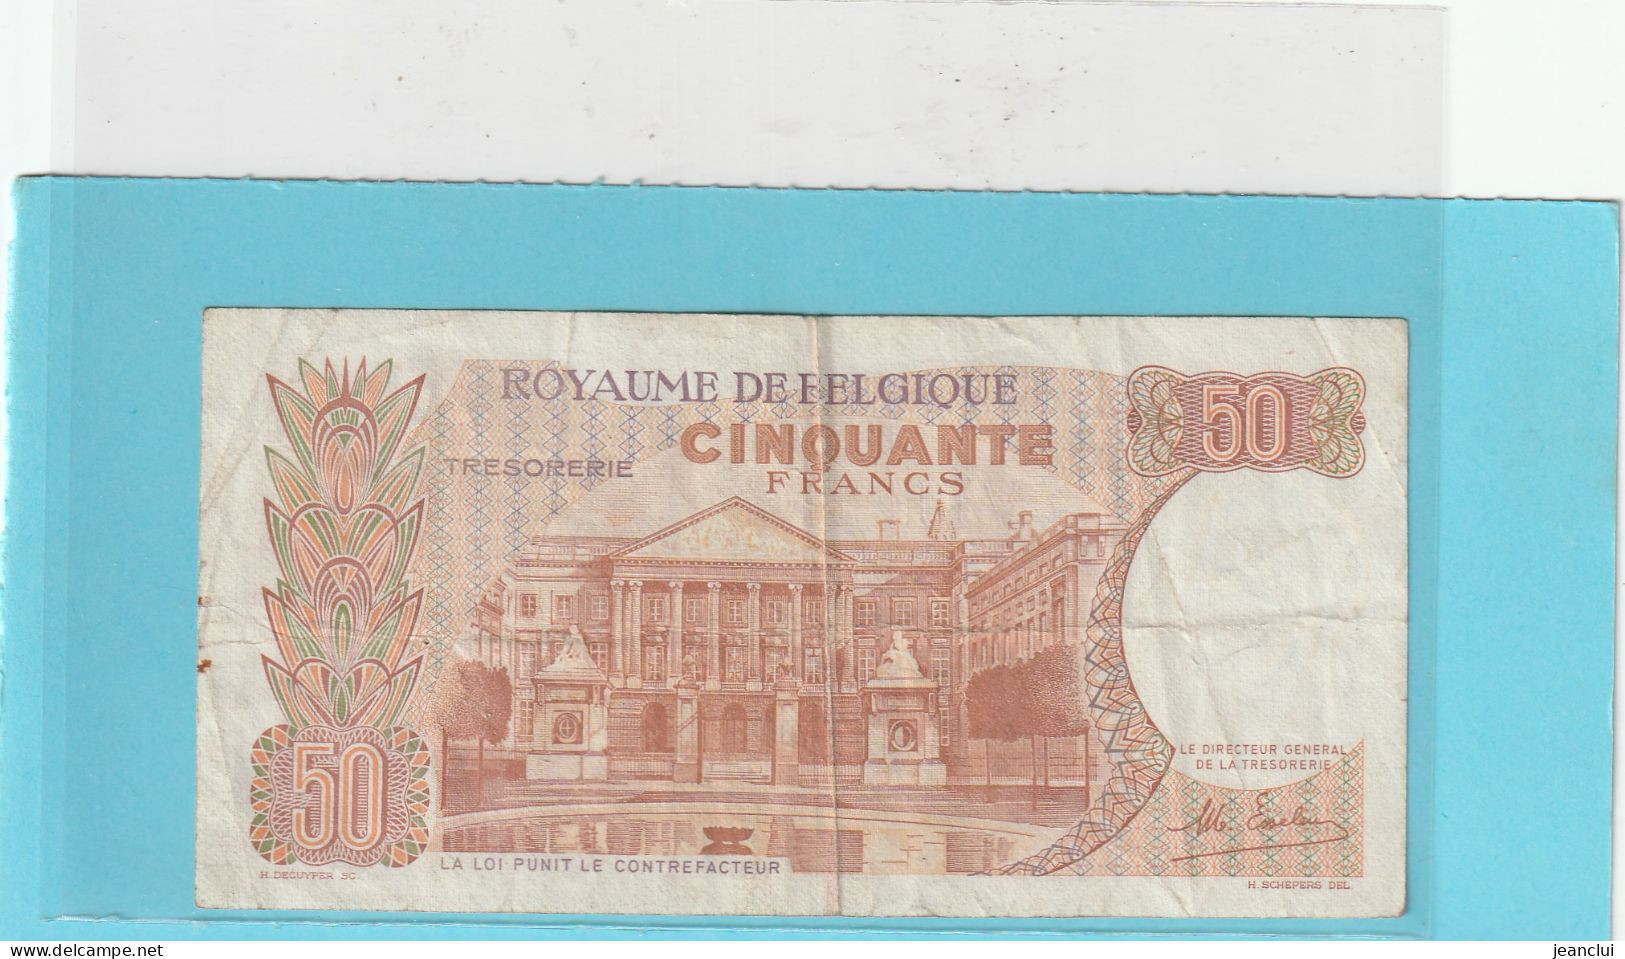 ROYAUME DE BELGIQUE  .  TRESORERIE  .  50 FRANCS . 16-5-1966 .  N° 177113993  .  2 SCANNES - 50 Franchi